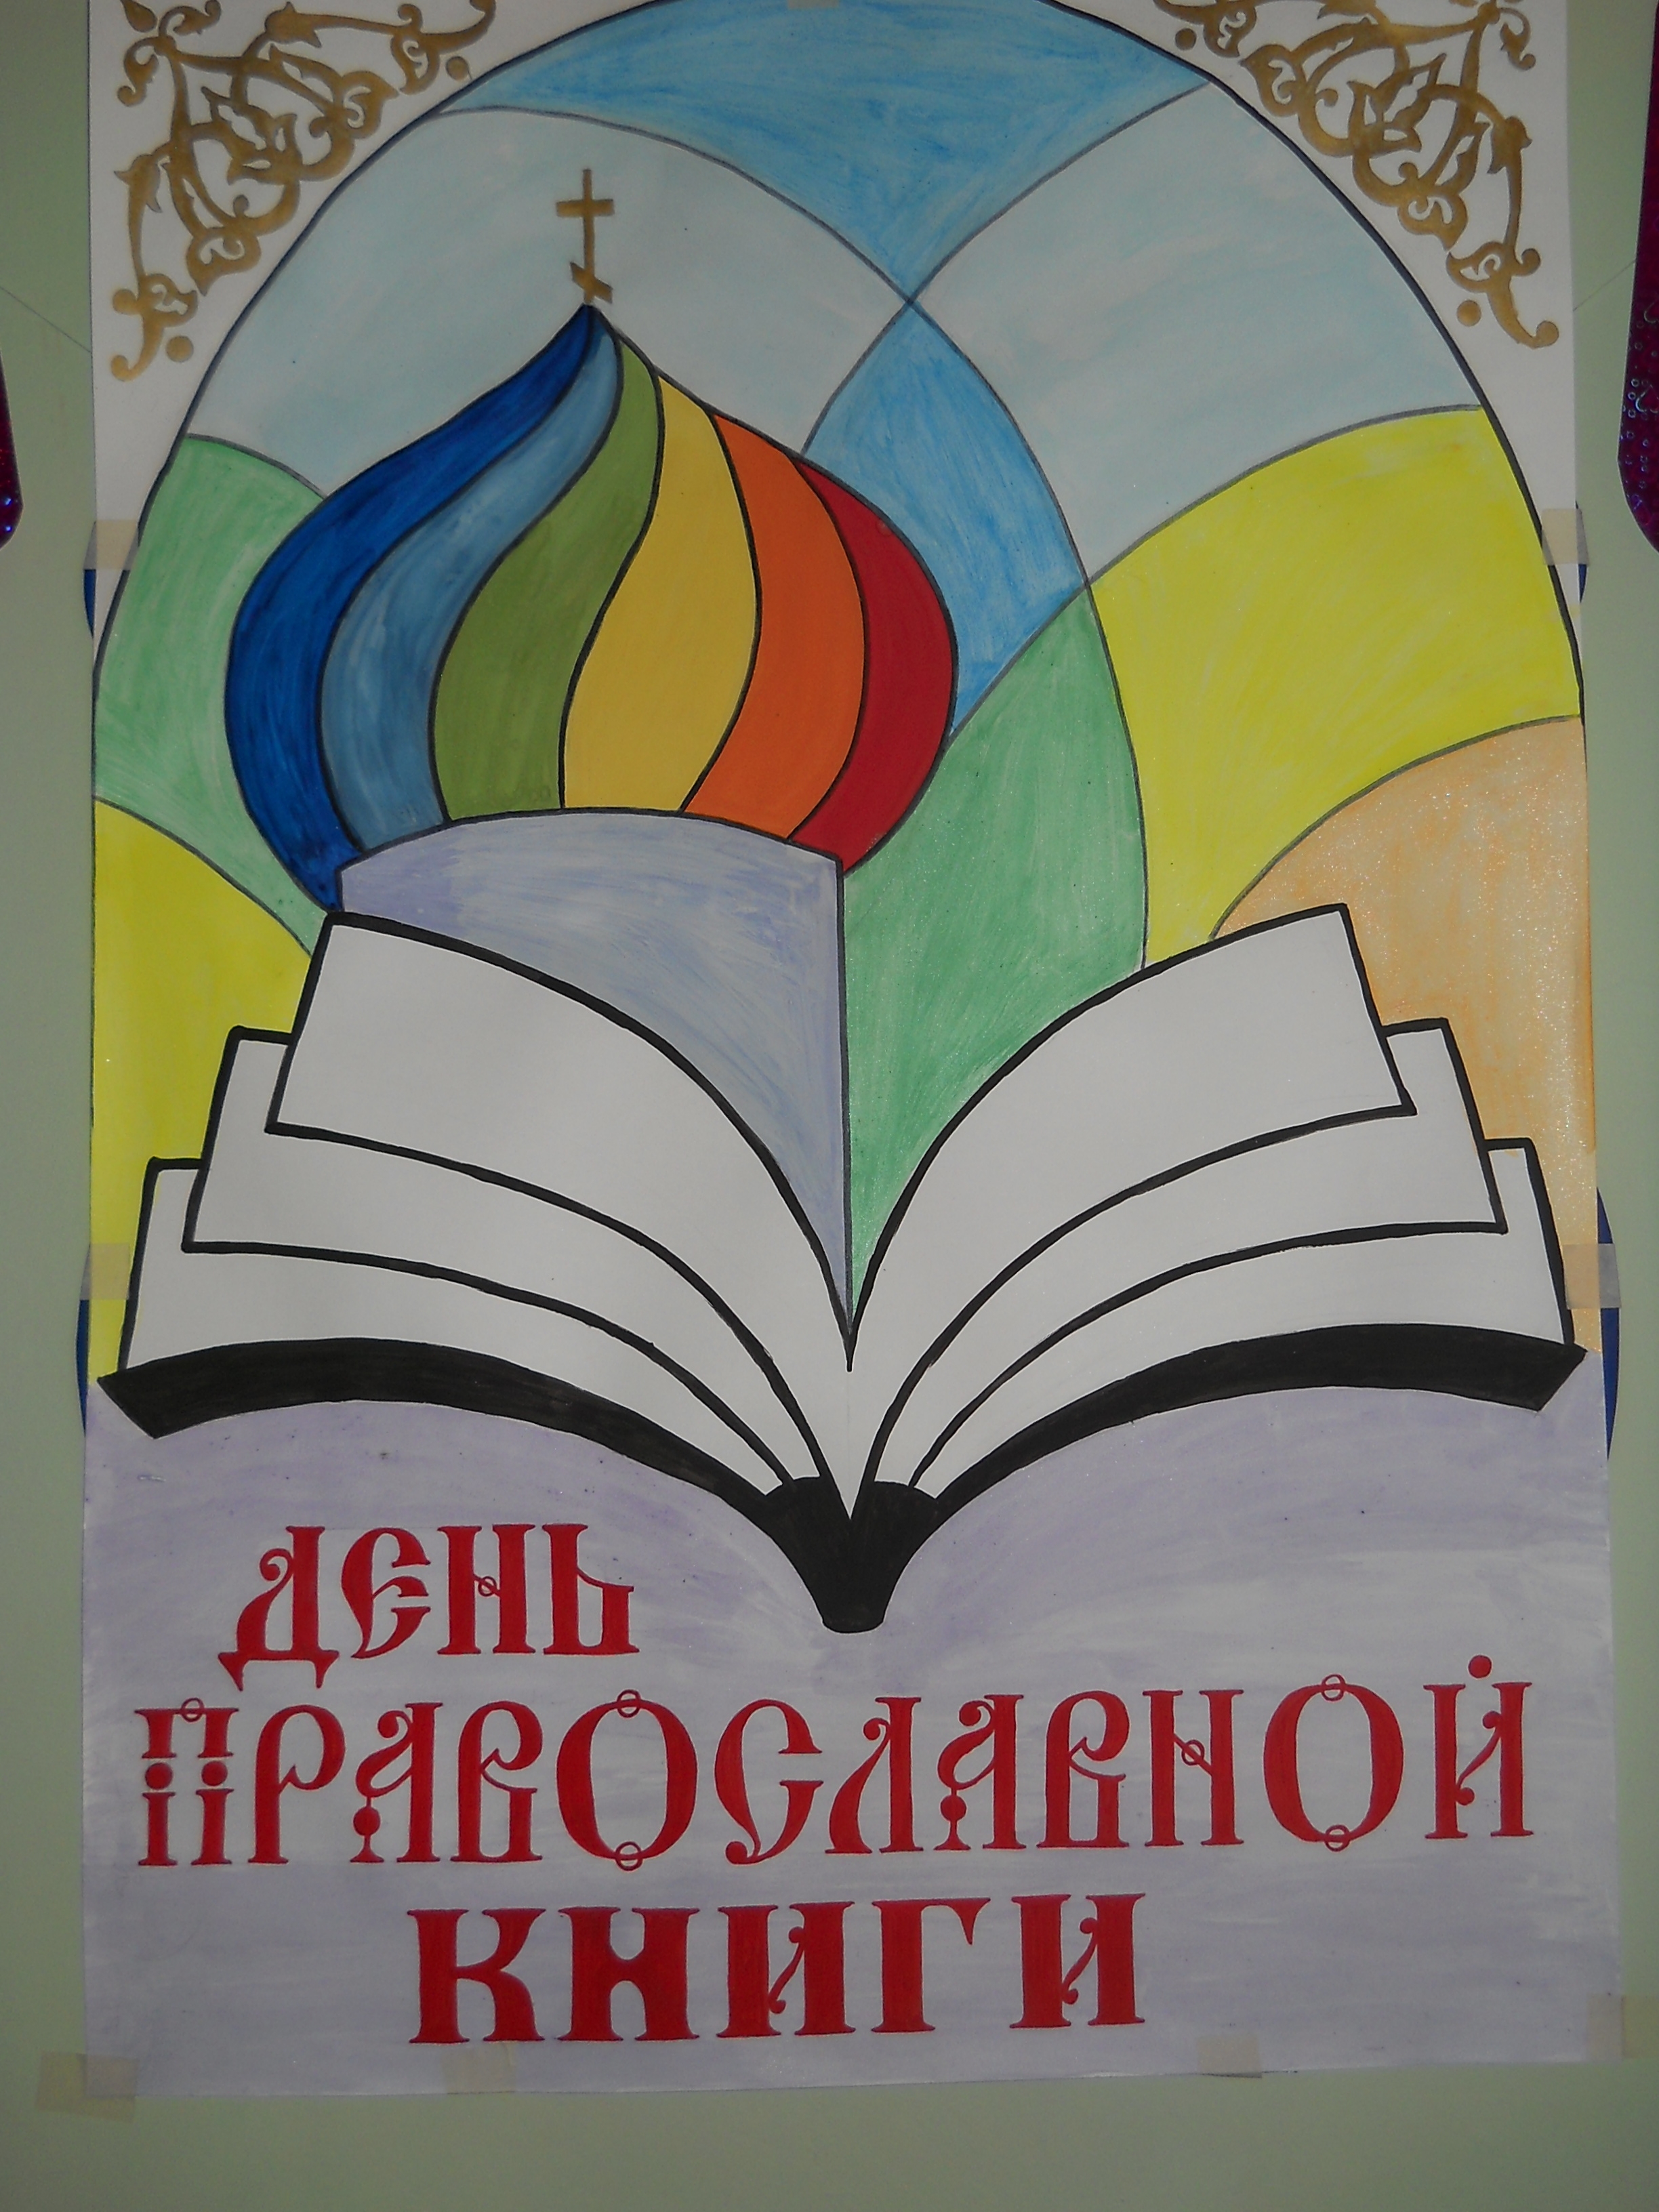 Рисунок православной книги